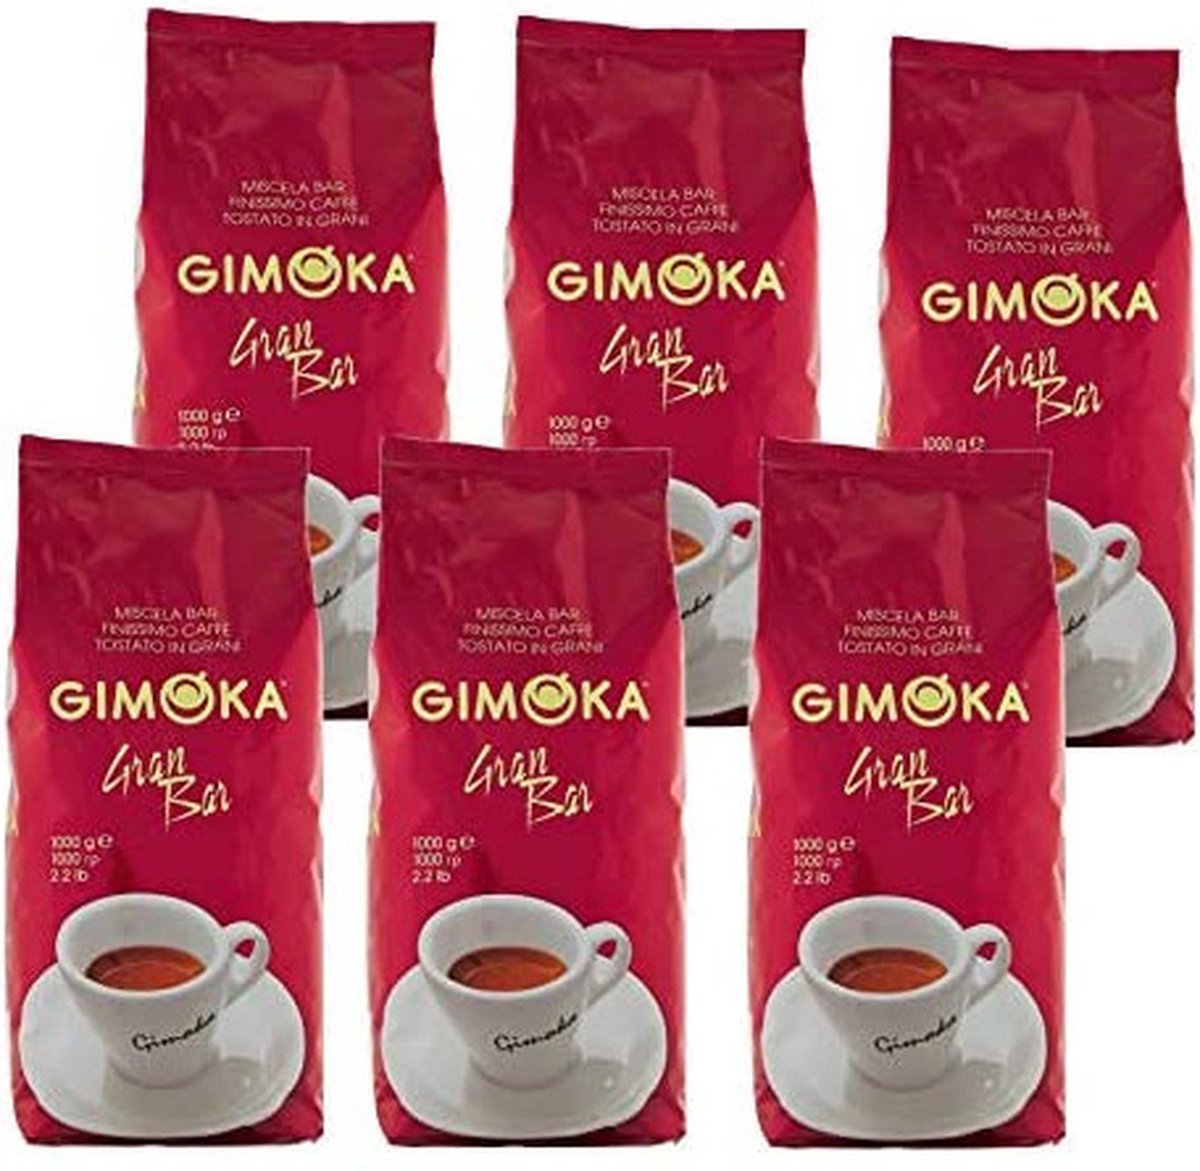 Gimoka Gran Bar - koffiebonen - 6 x 1 kilo